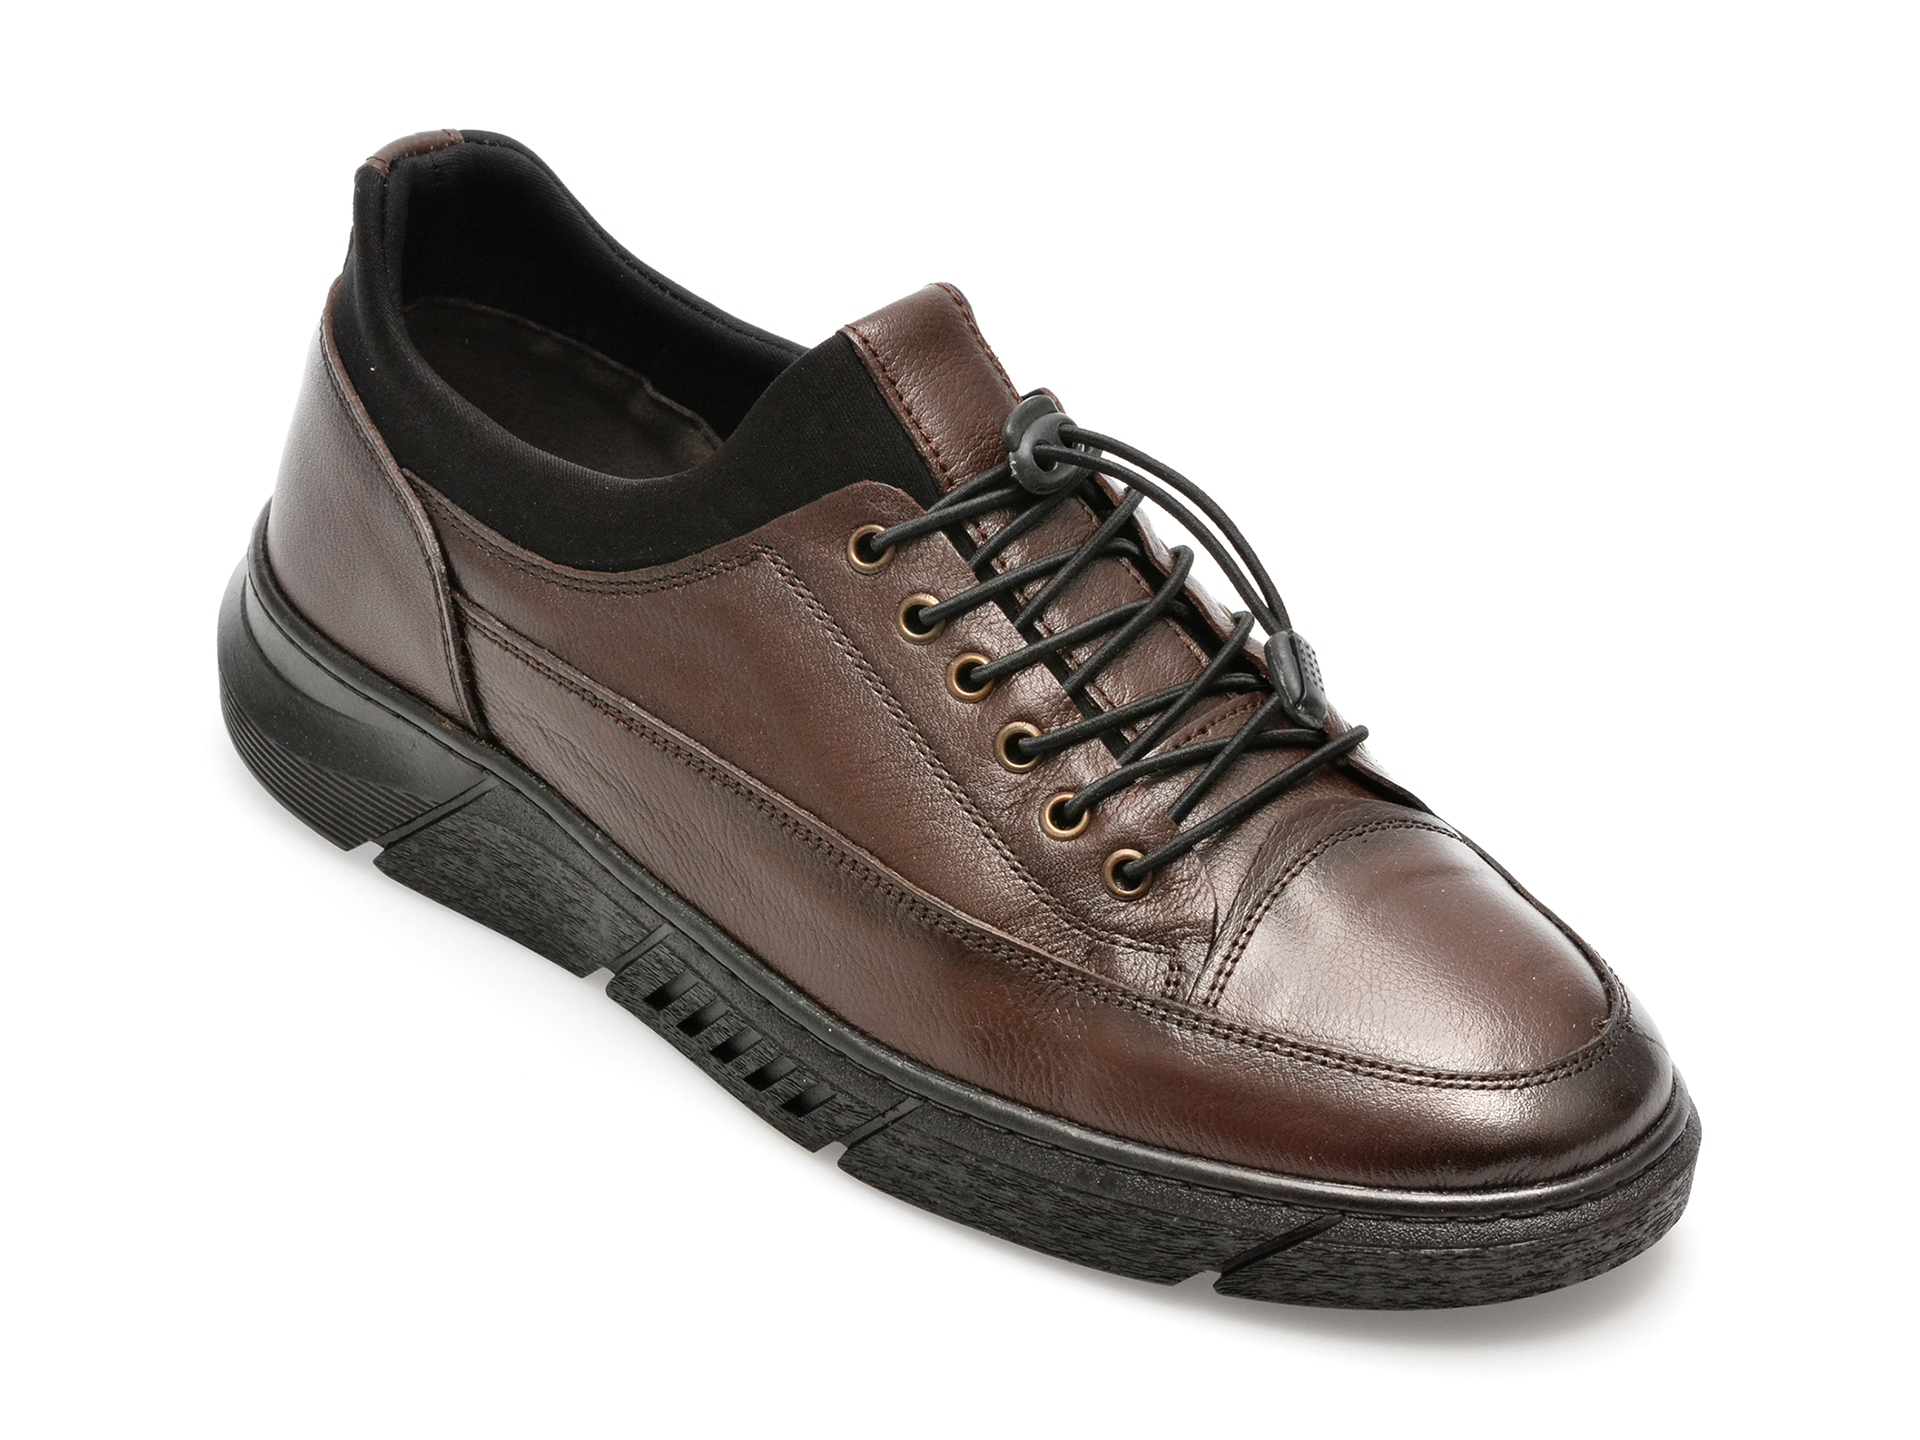 Pantofi AXXELLL maro, ER802, din piele naturala /barbati/pantofi